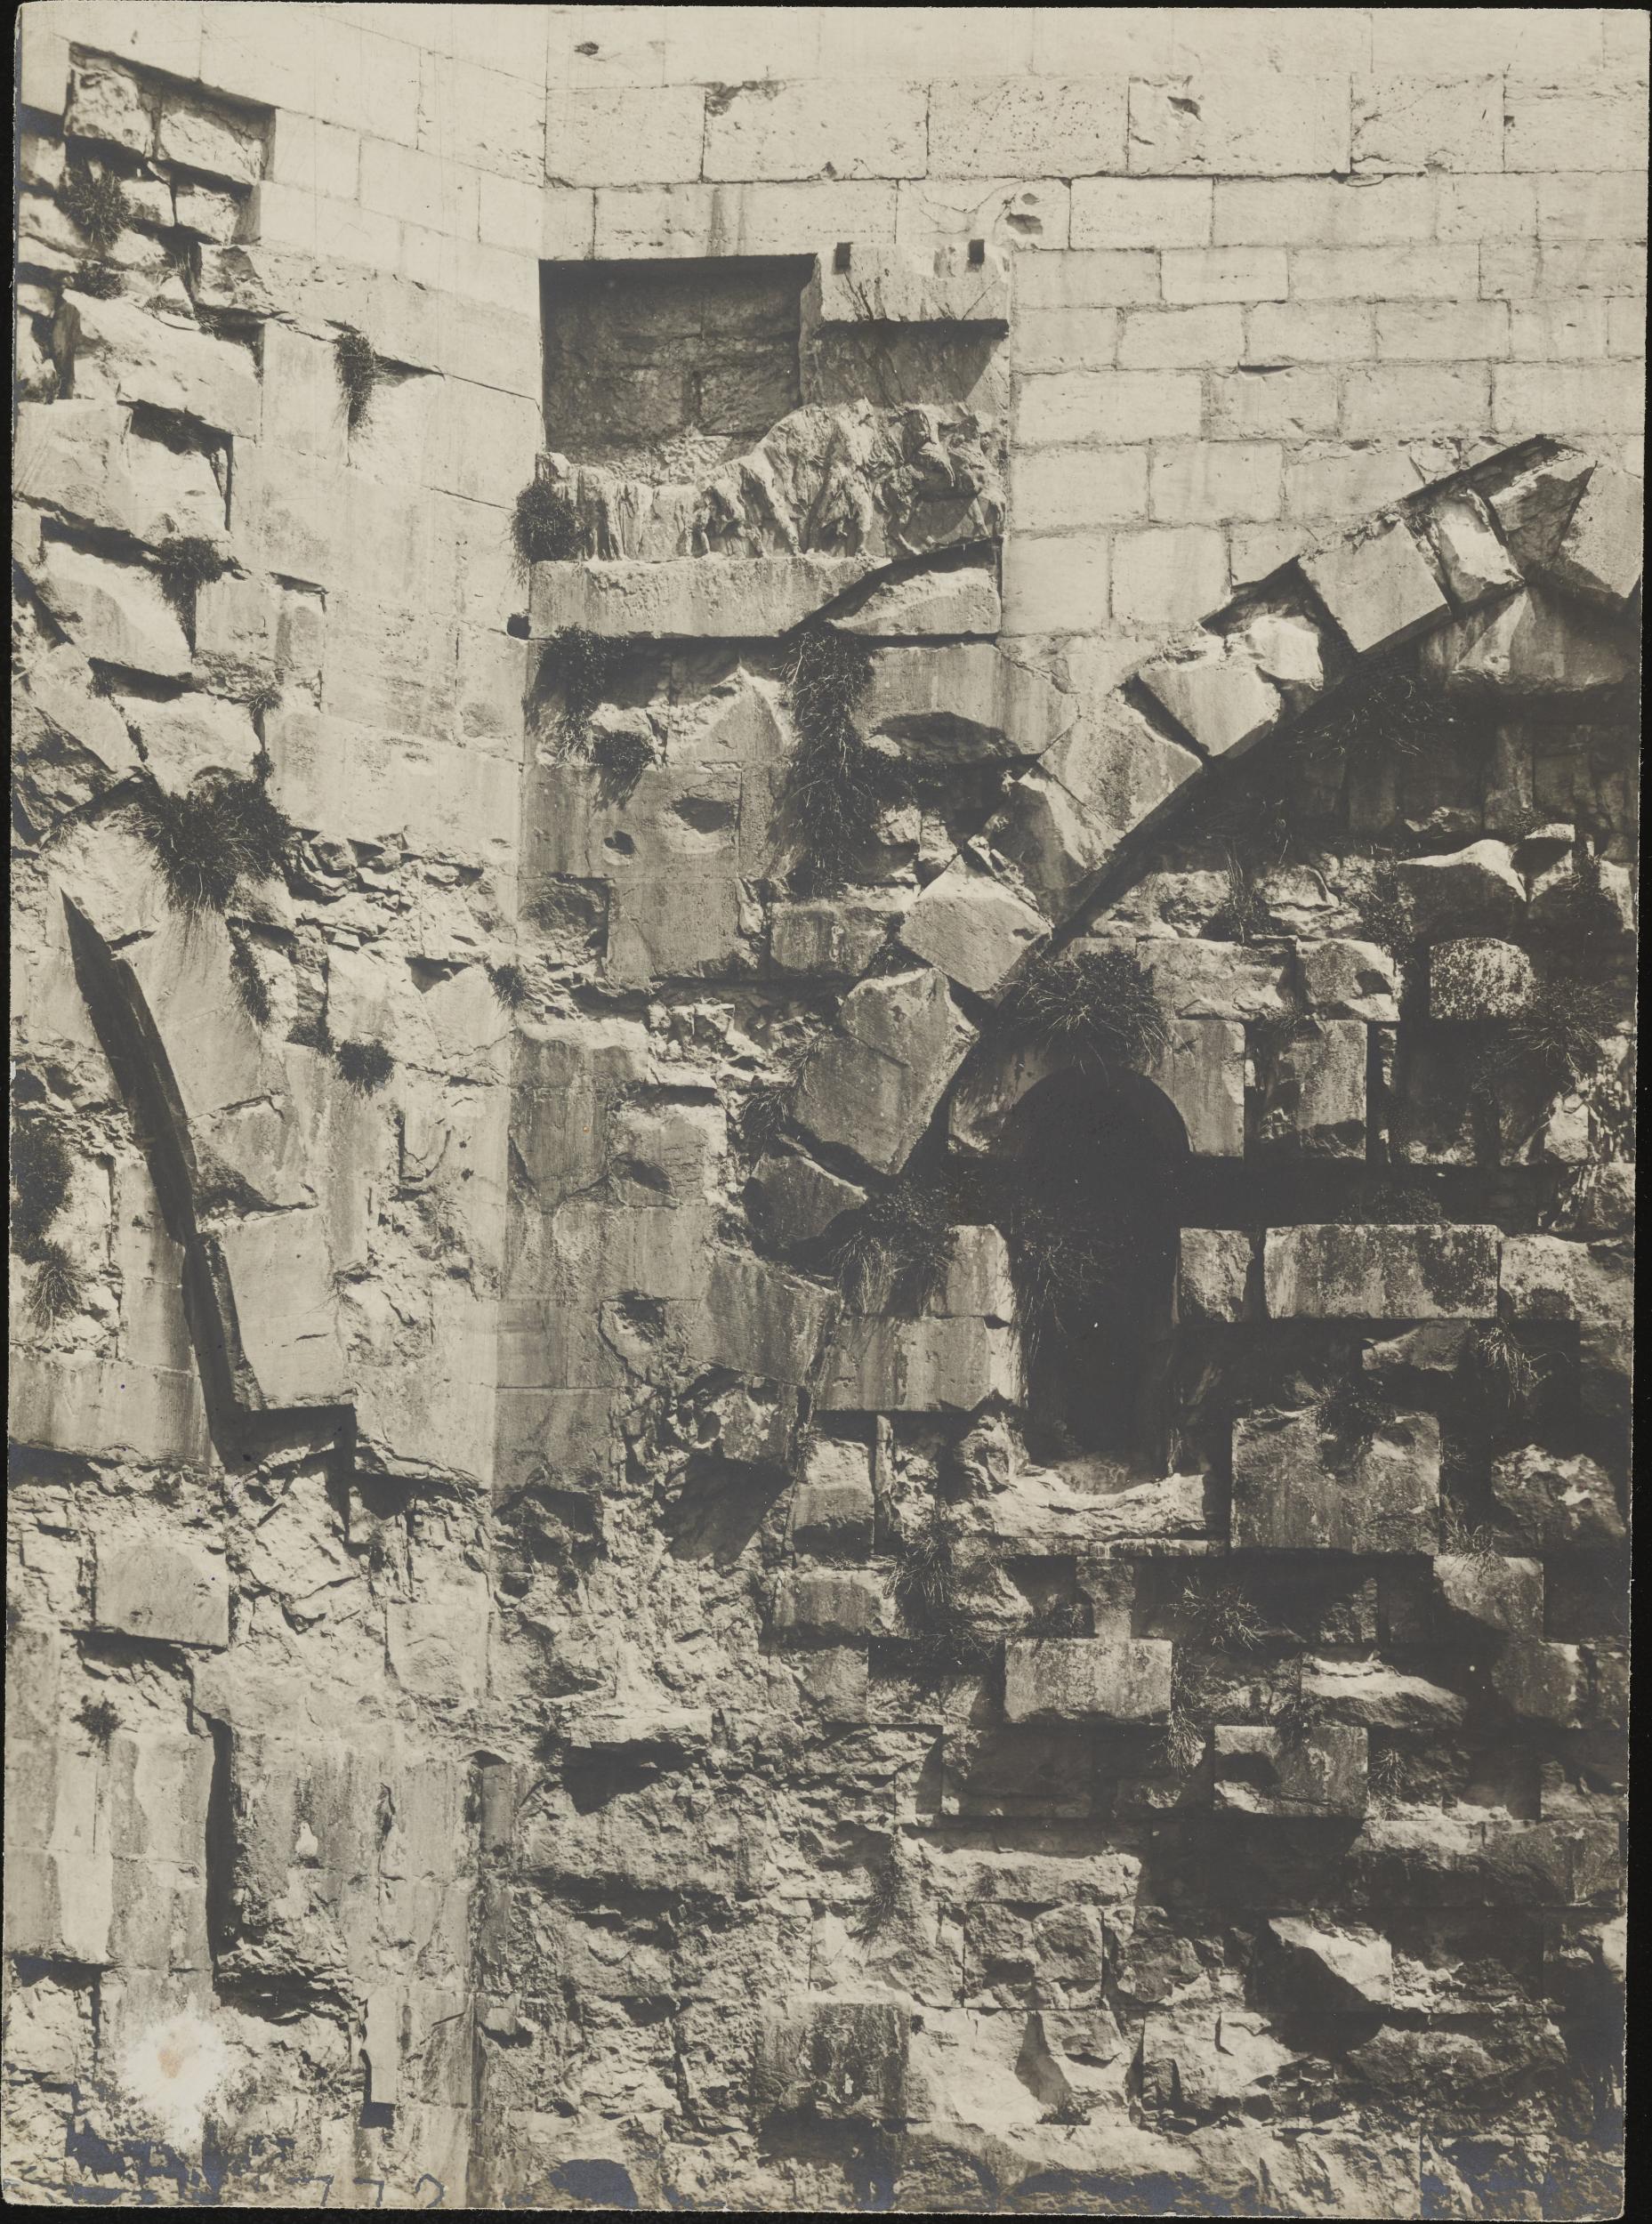 Fotografo non identificato, Andria, Castel del Monte - Cortile, rilievo, 1951-2000, gelatina ai sali d'argento/carta, MPI6016726